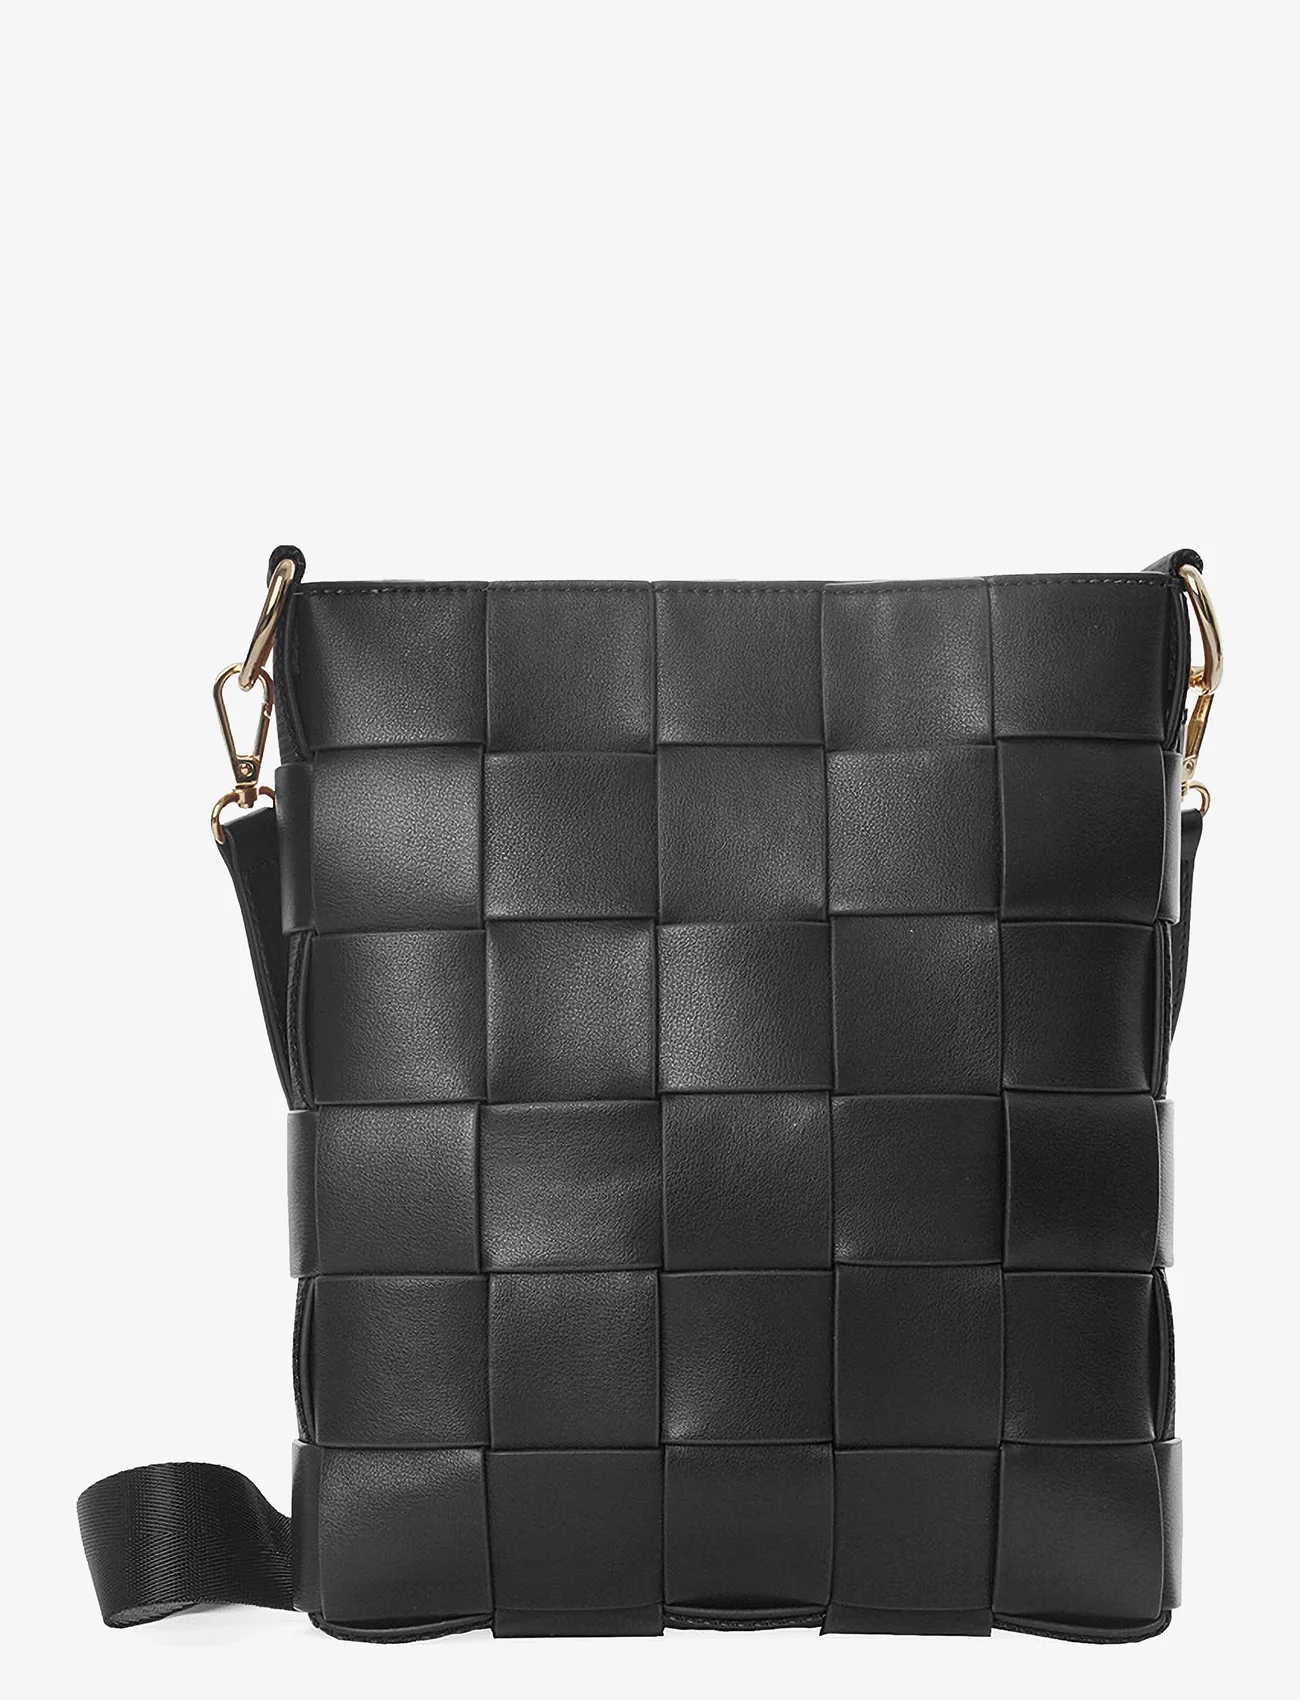 Ceannis - Braided Strap Bag Black - odzież imprezowa w cenach outletowych - black - 1